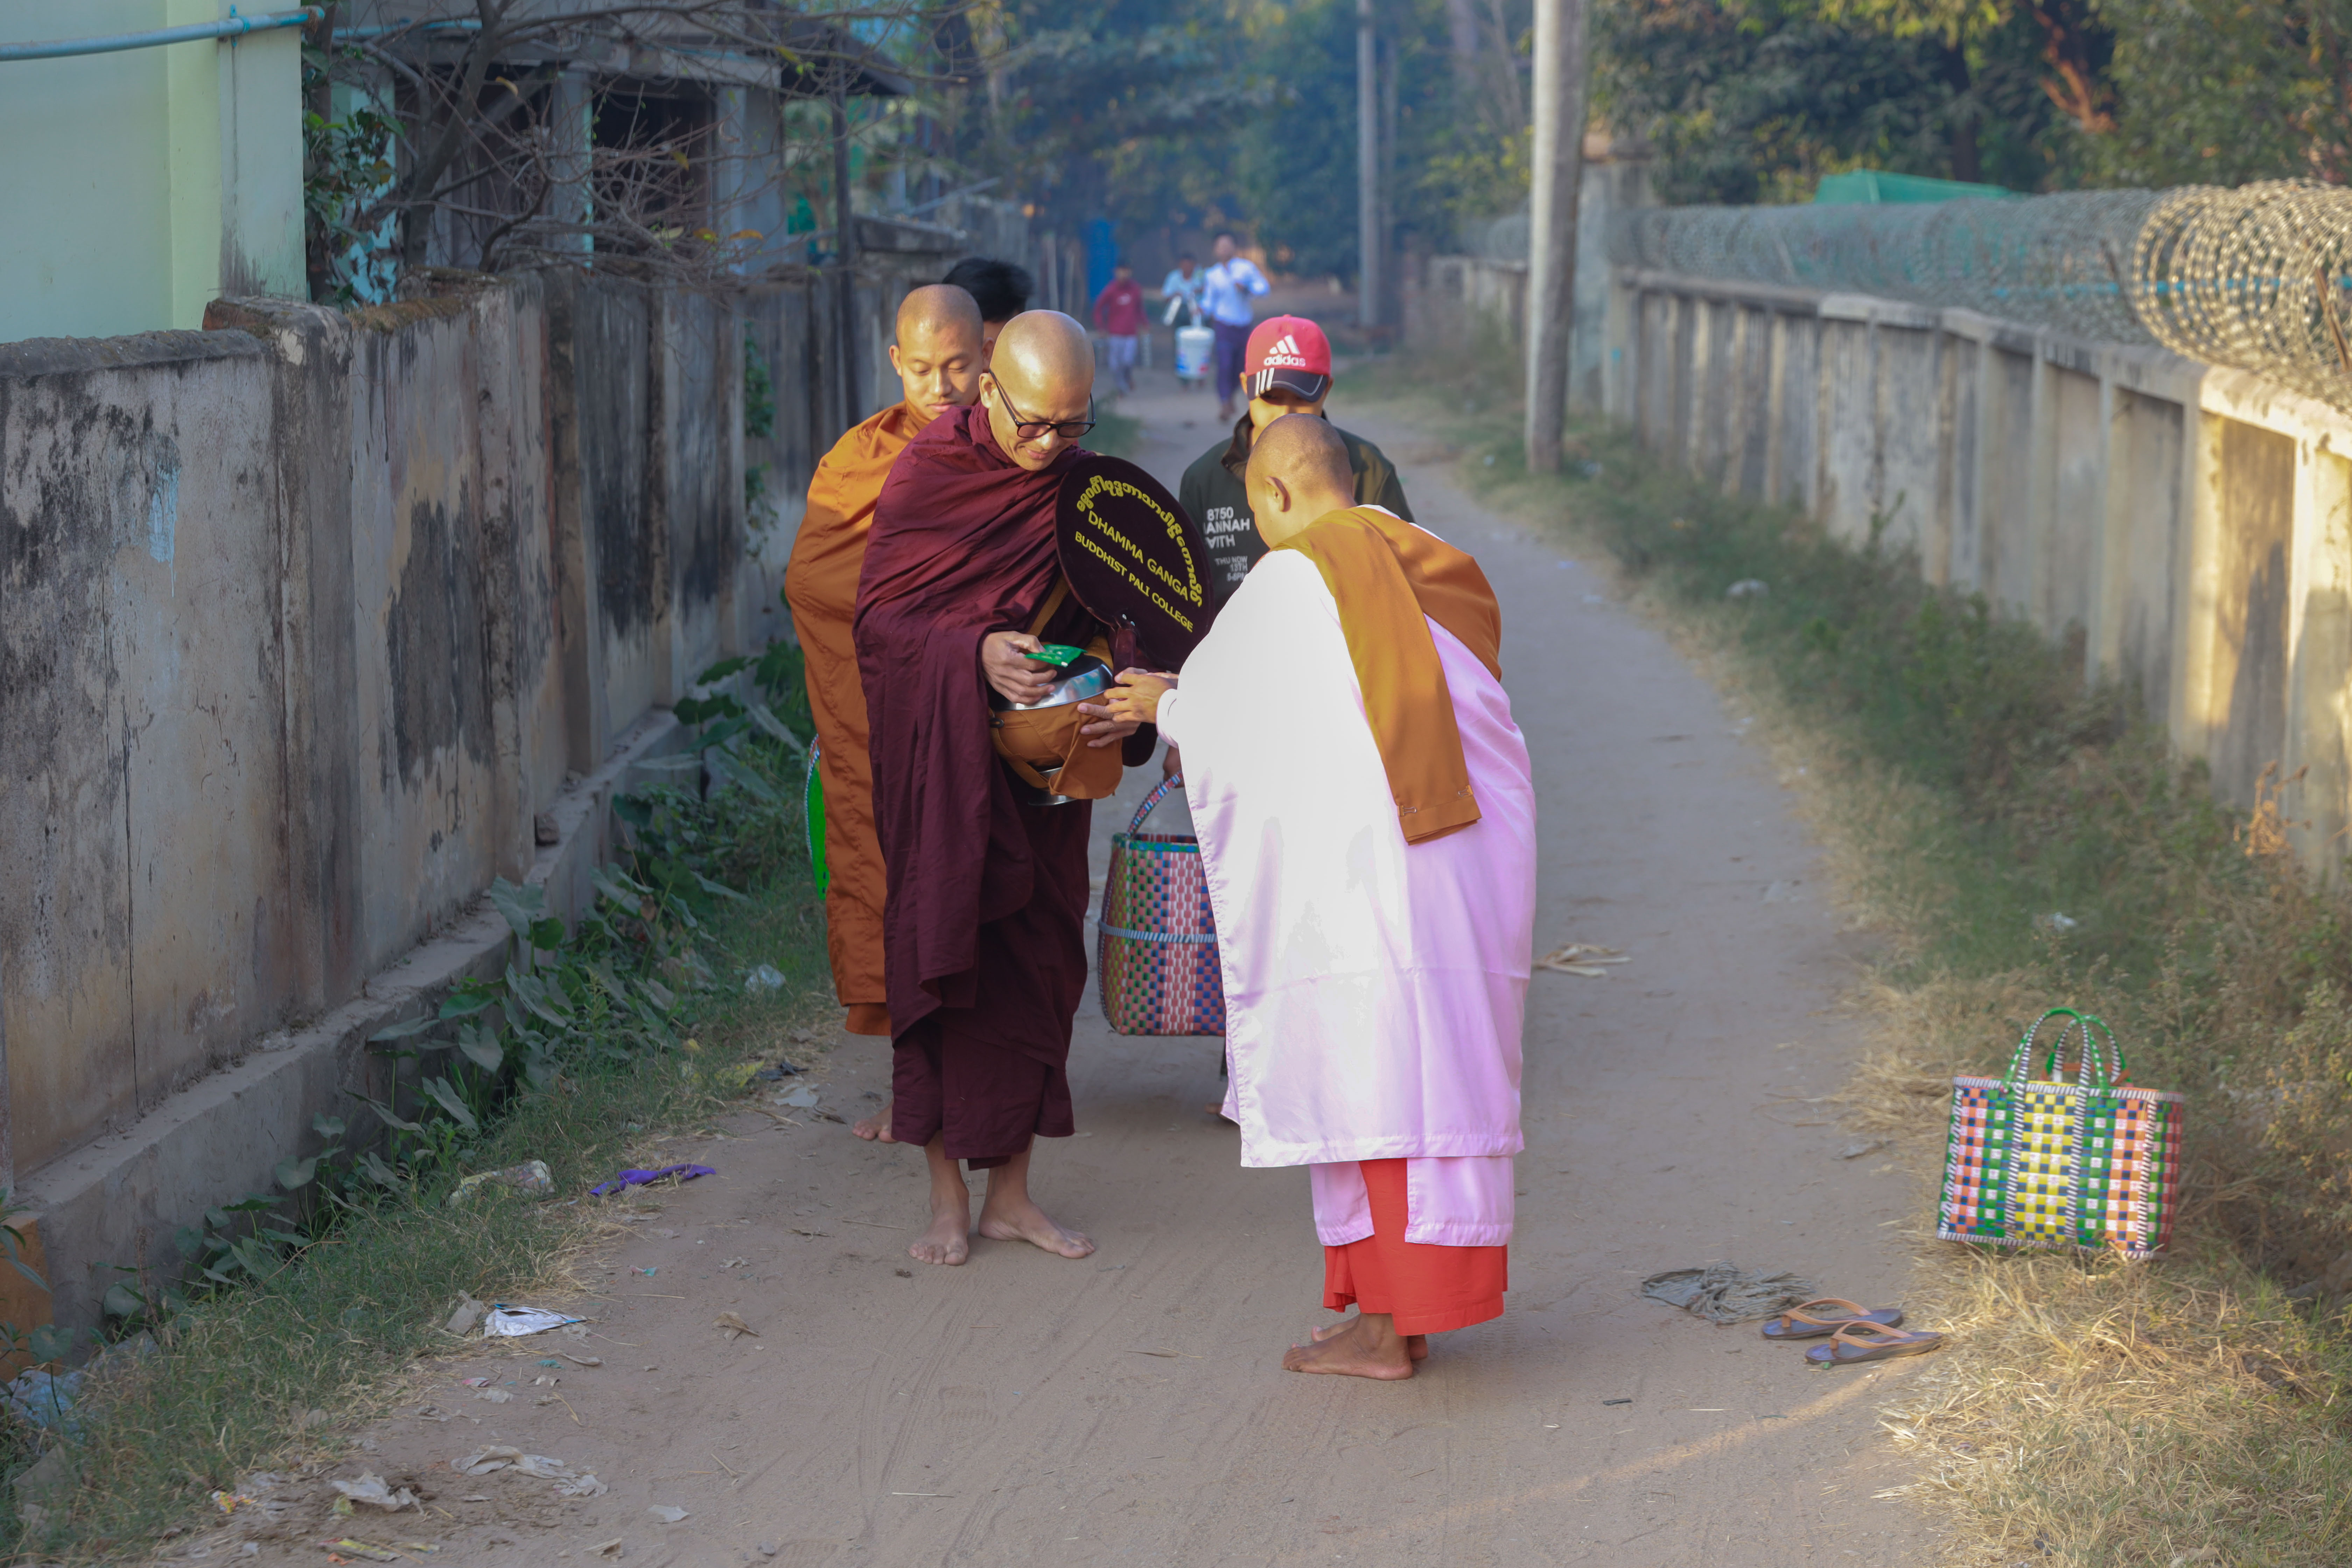 Unser globales Dorf des Dialogs in Myanmar gemeinsam aufbauen